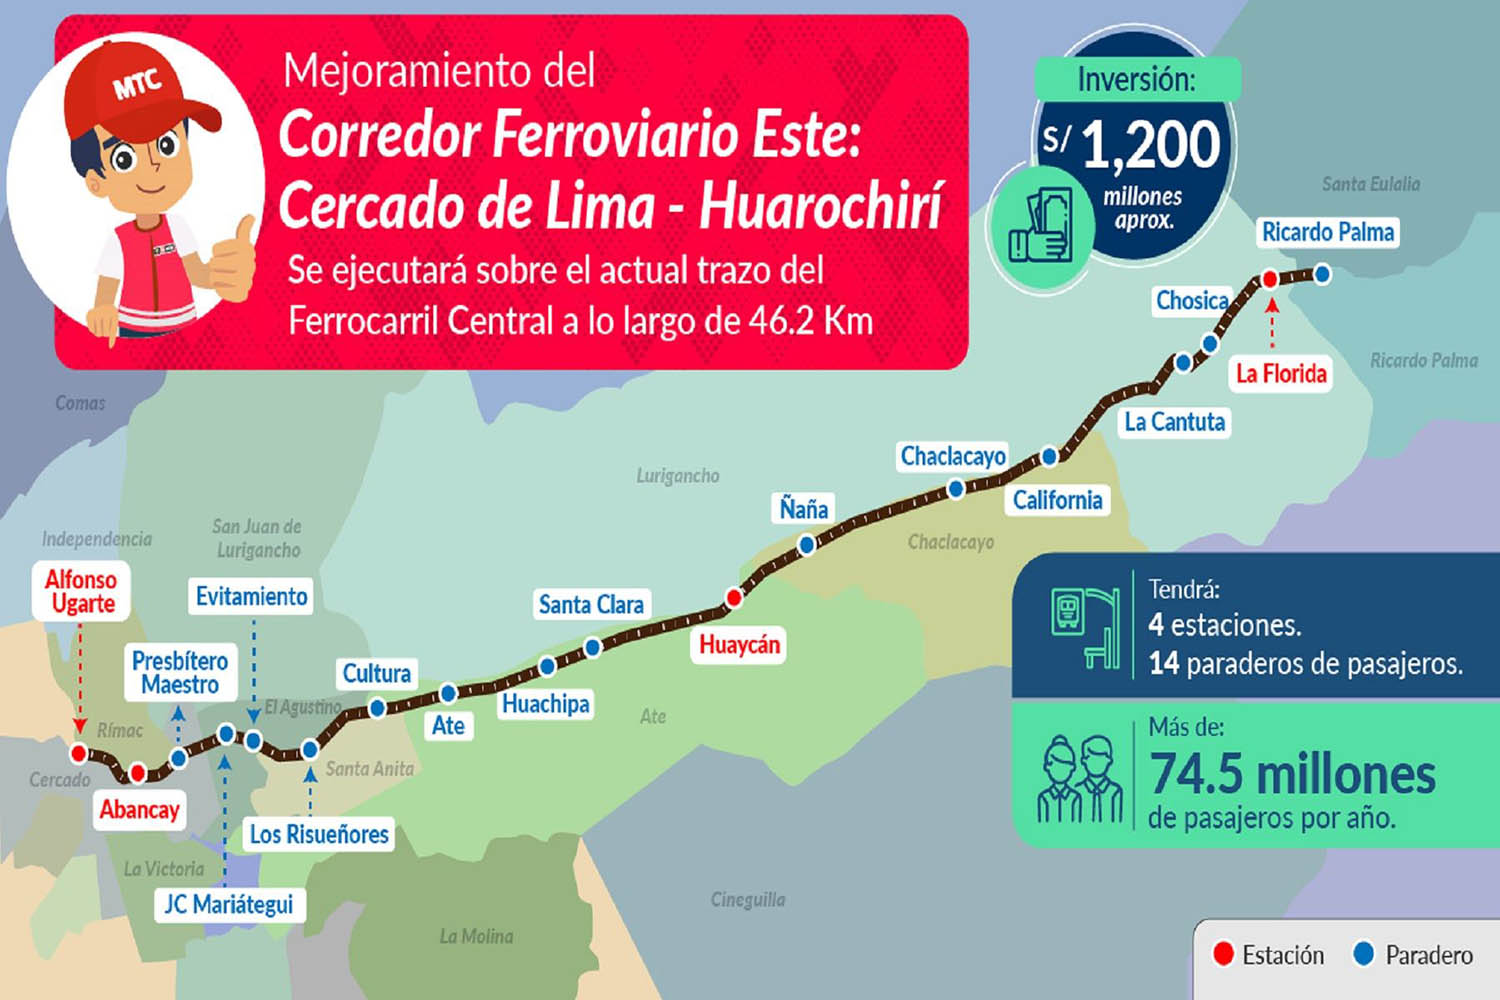 Tren unirá Cercado de Lima y Huarochirí con inversión de S/ 1,200 millones